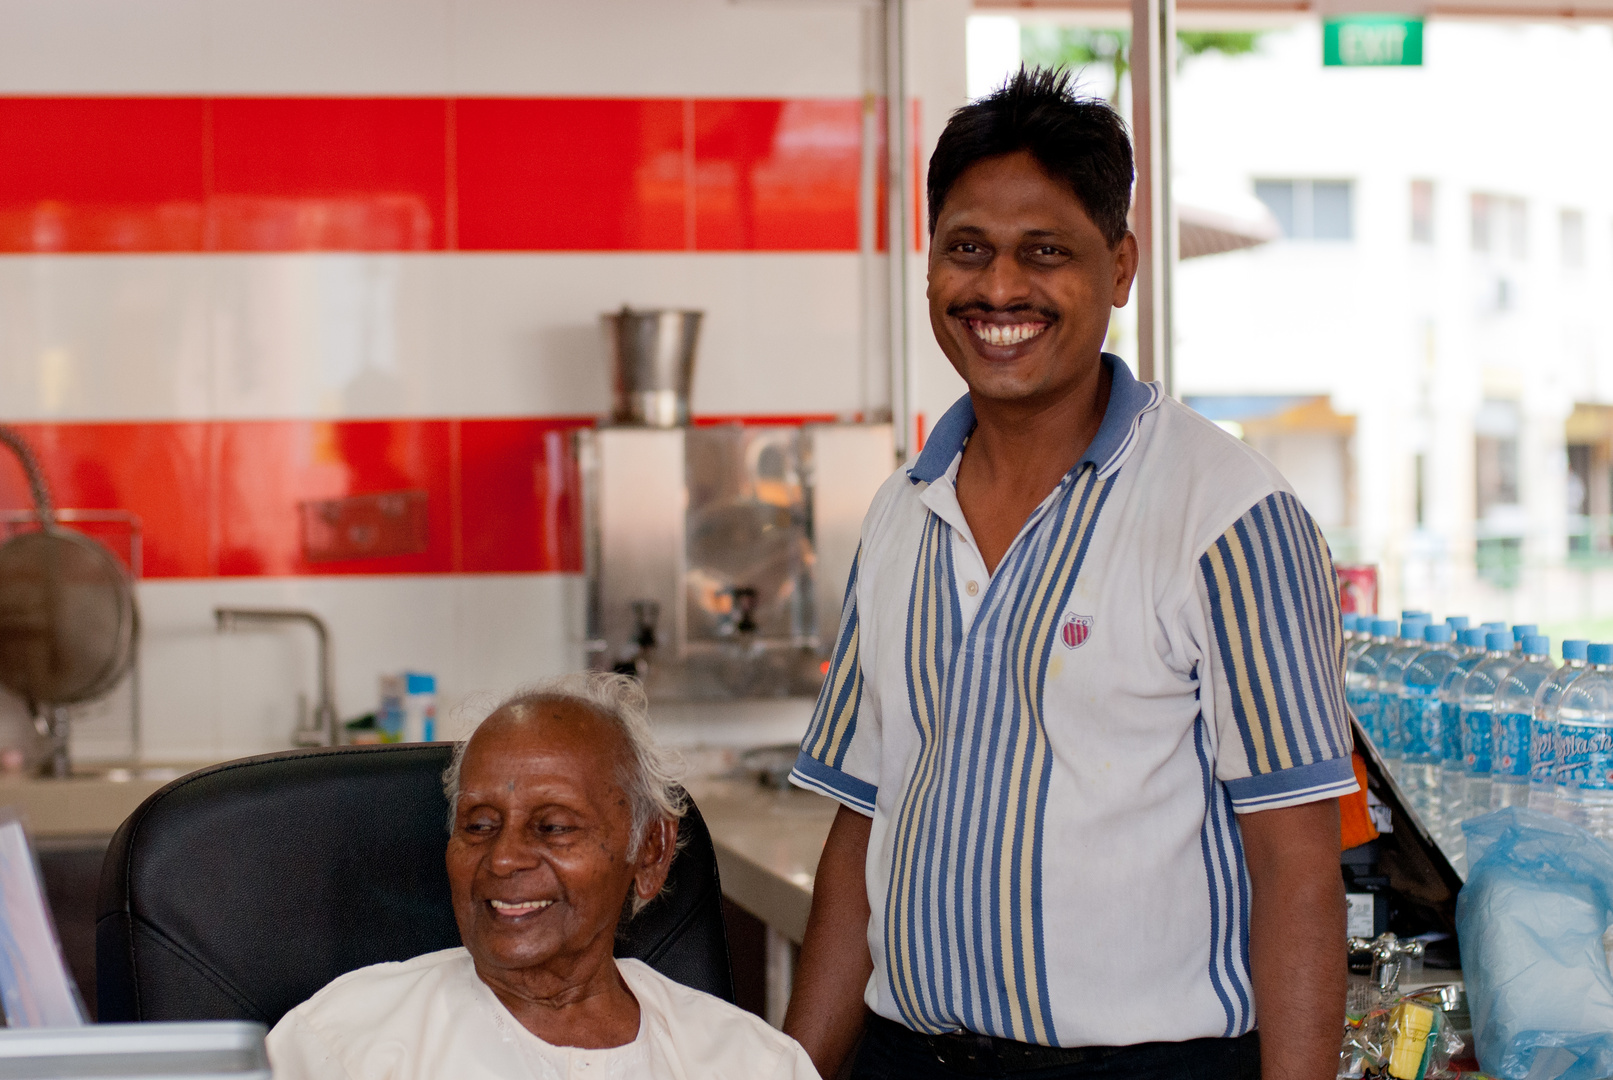 SIngapore Little India - Fotogeschenk an Restaurantinhaber